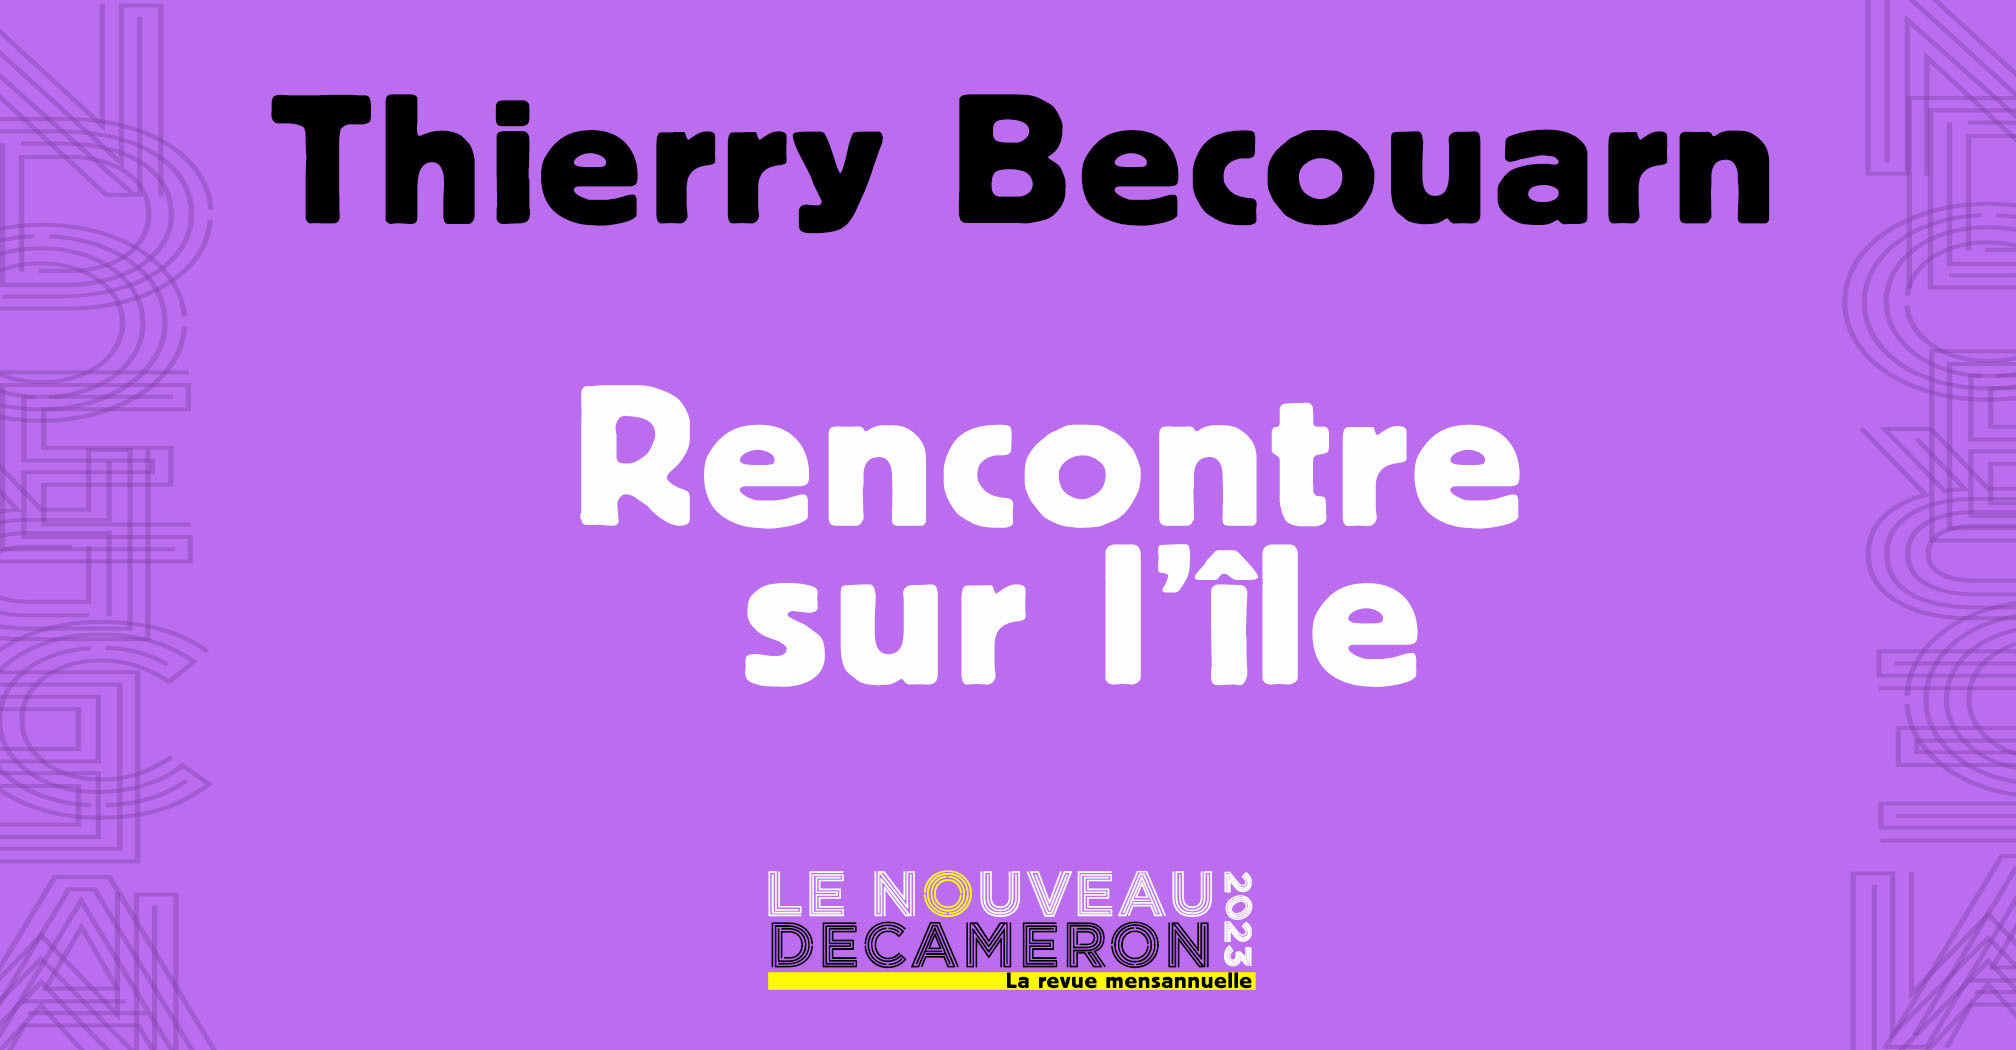 Thierry Becouarn - Rencontre sur l'île 